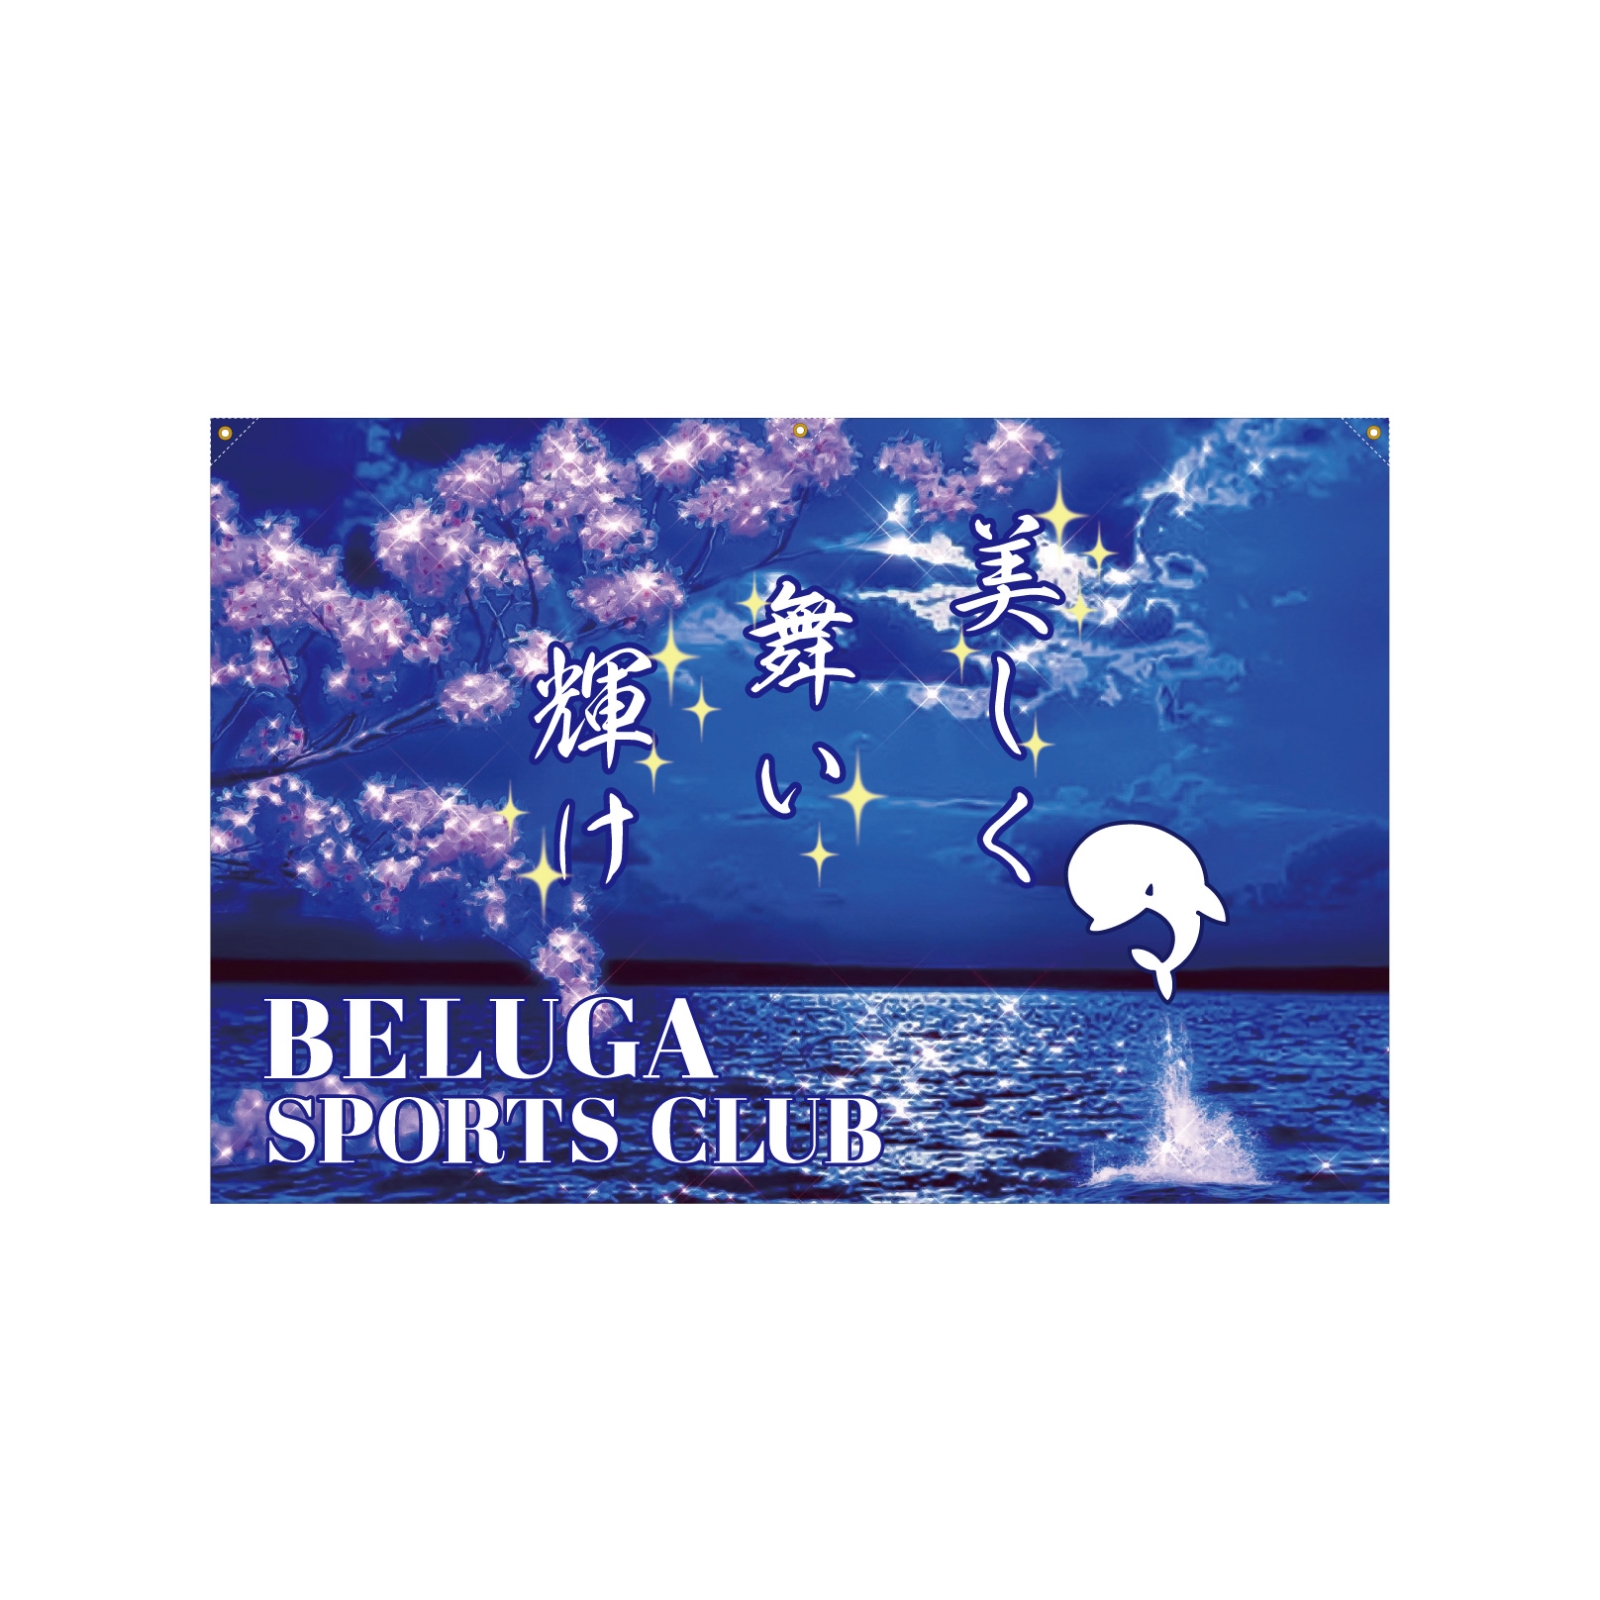 スポーツクラブの旗